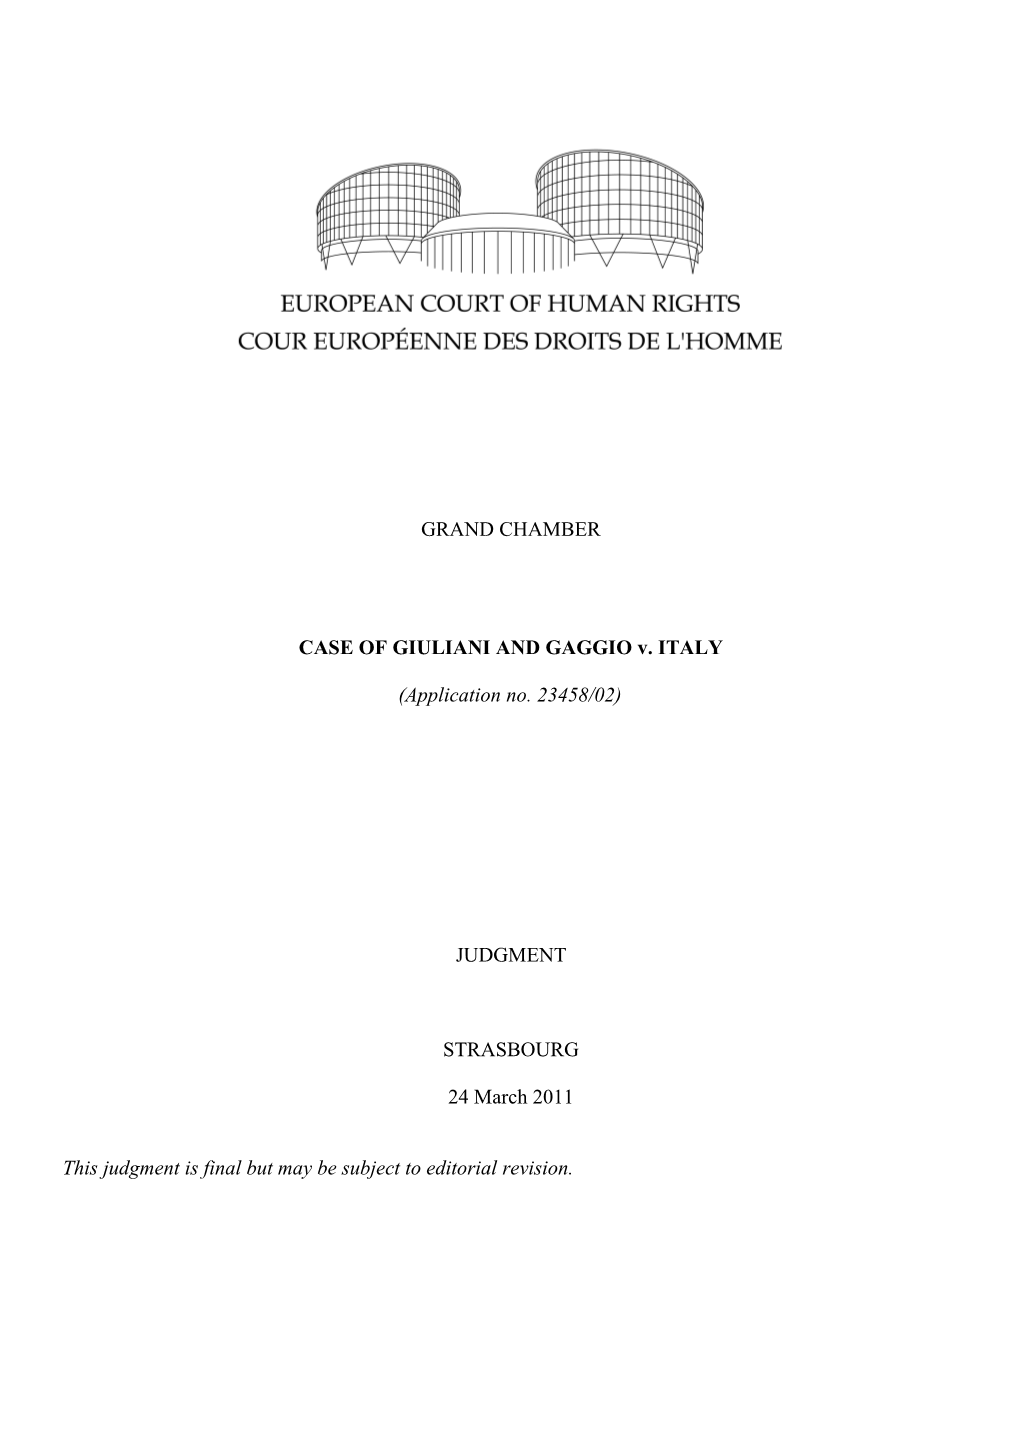 CASE of GIULIANI and GAGGIO V. ITALY